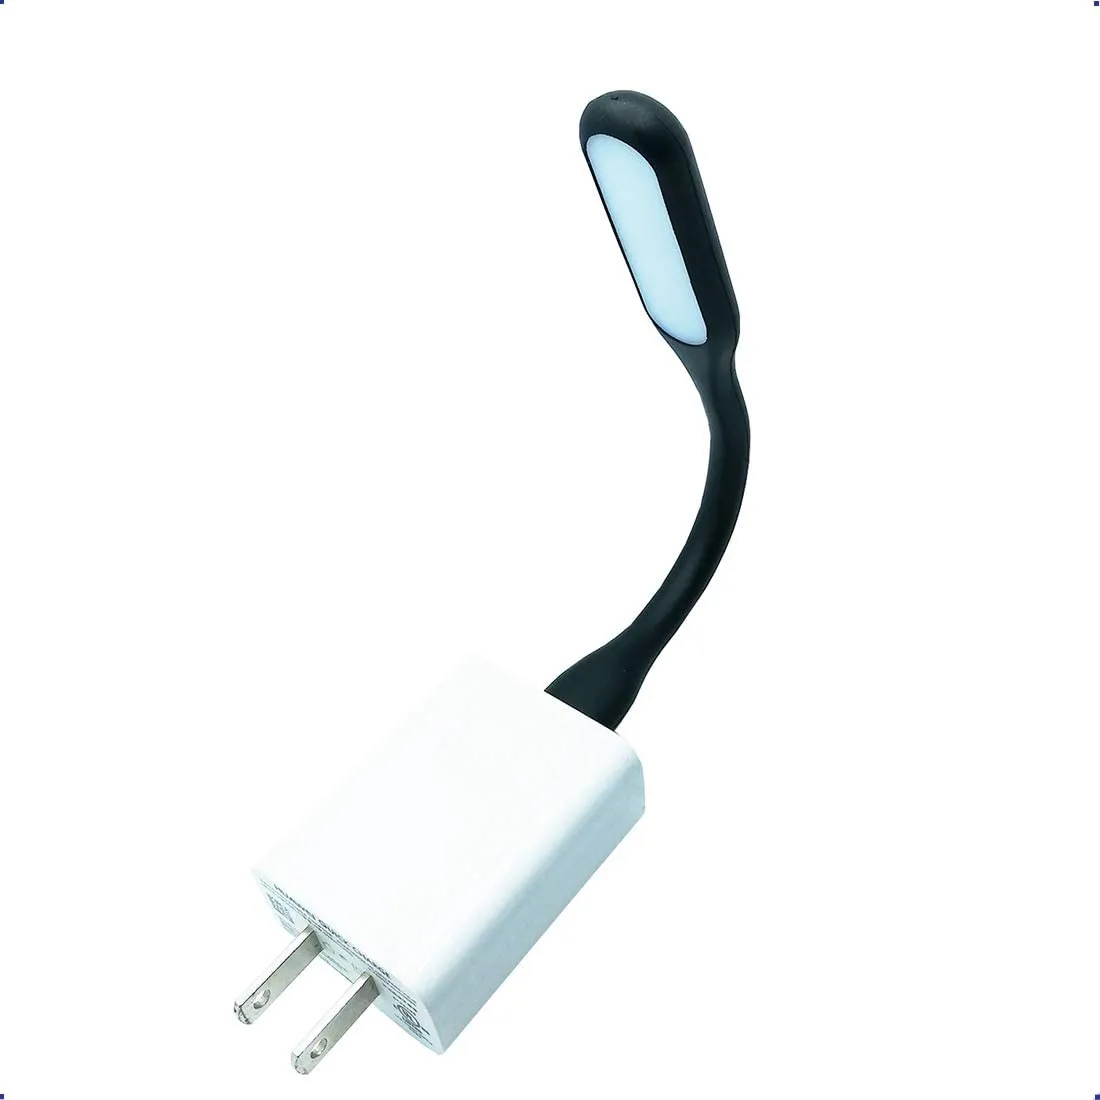 100 шт. Mini USB Light Led Lod Light Light для портативного гибкого ночного света или чтения Lampcolor, как показано 10096230c